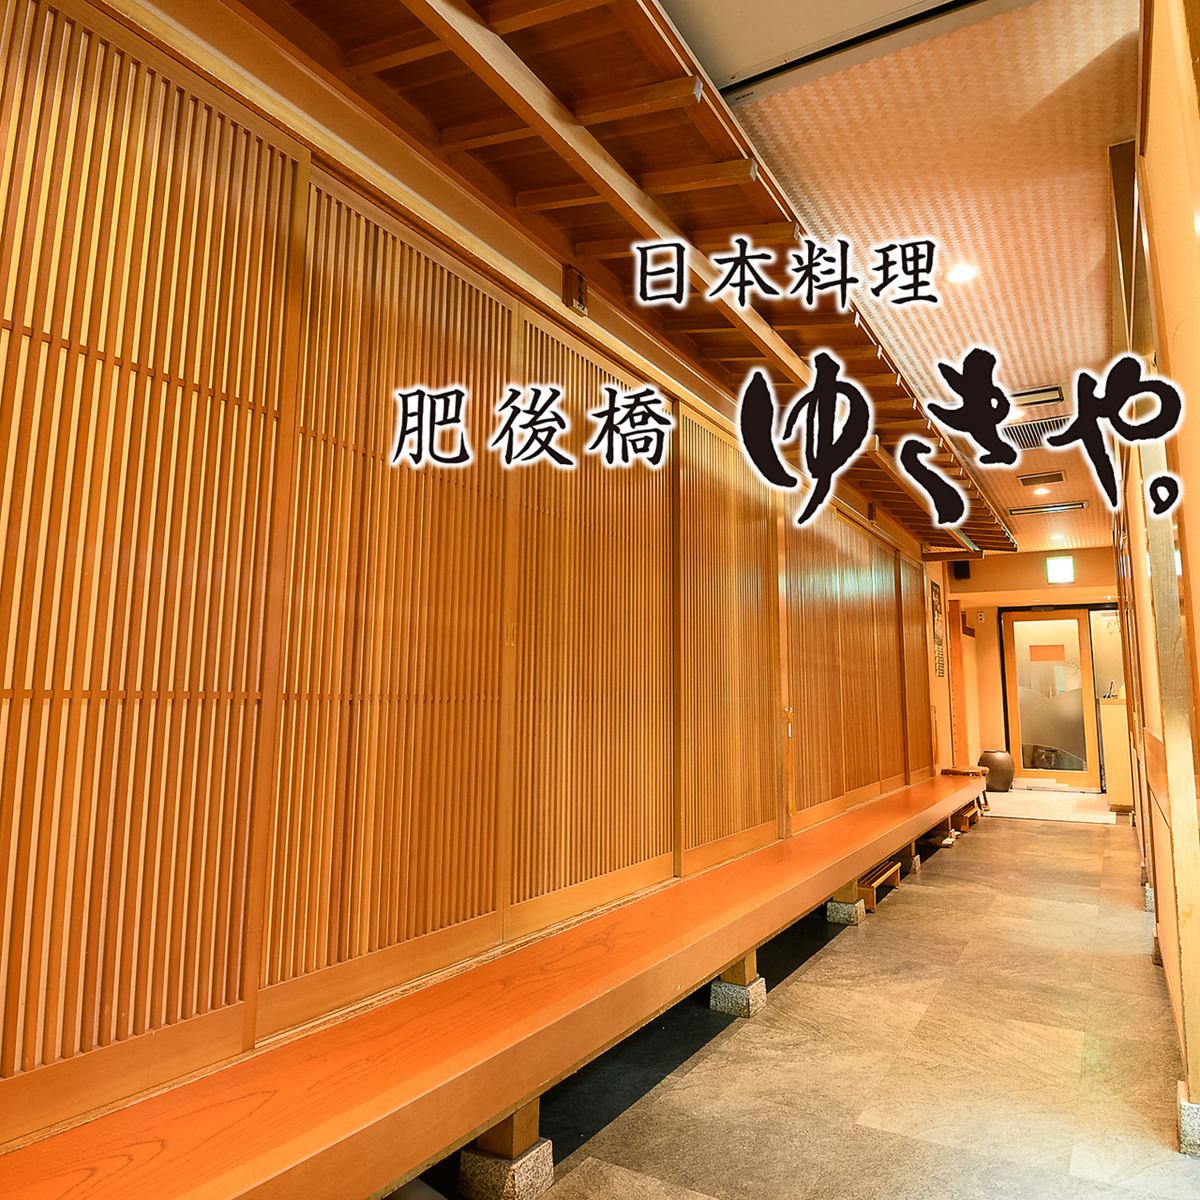 肥后桥站 | 日式料理 可以轻松享受由纪的味道。设备齐全的私人房间/非常适合娱乐和宴会。